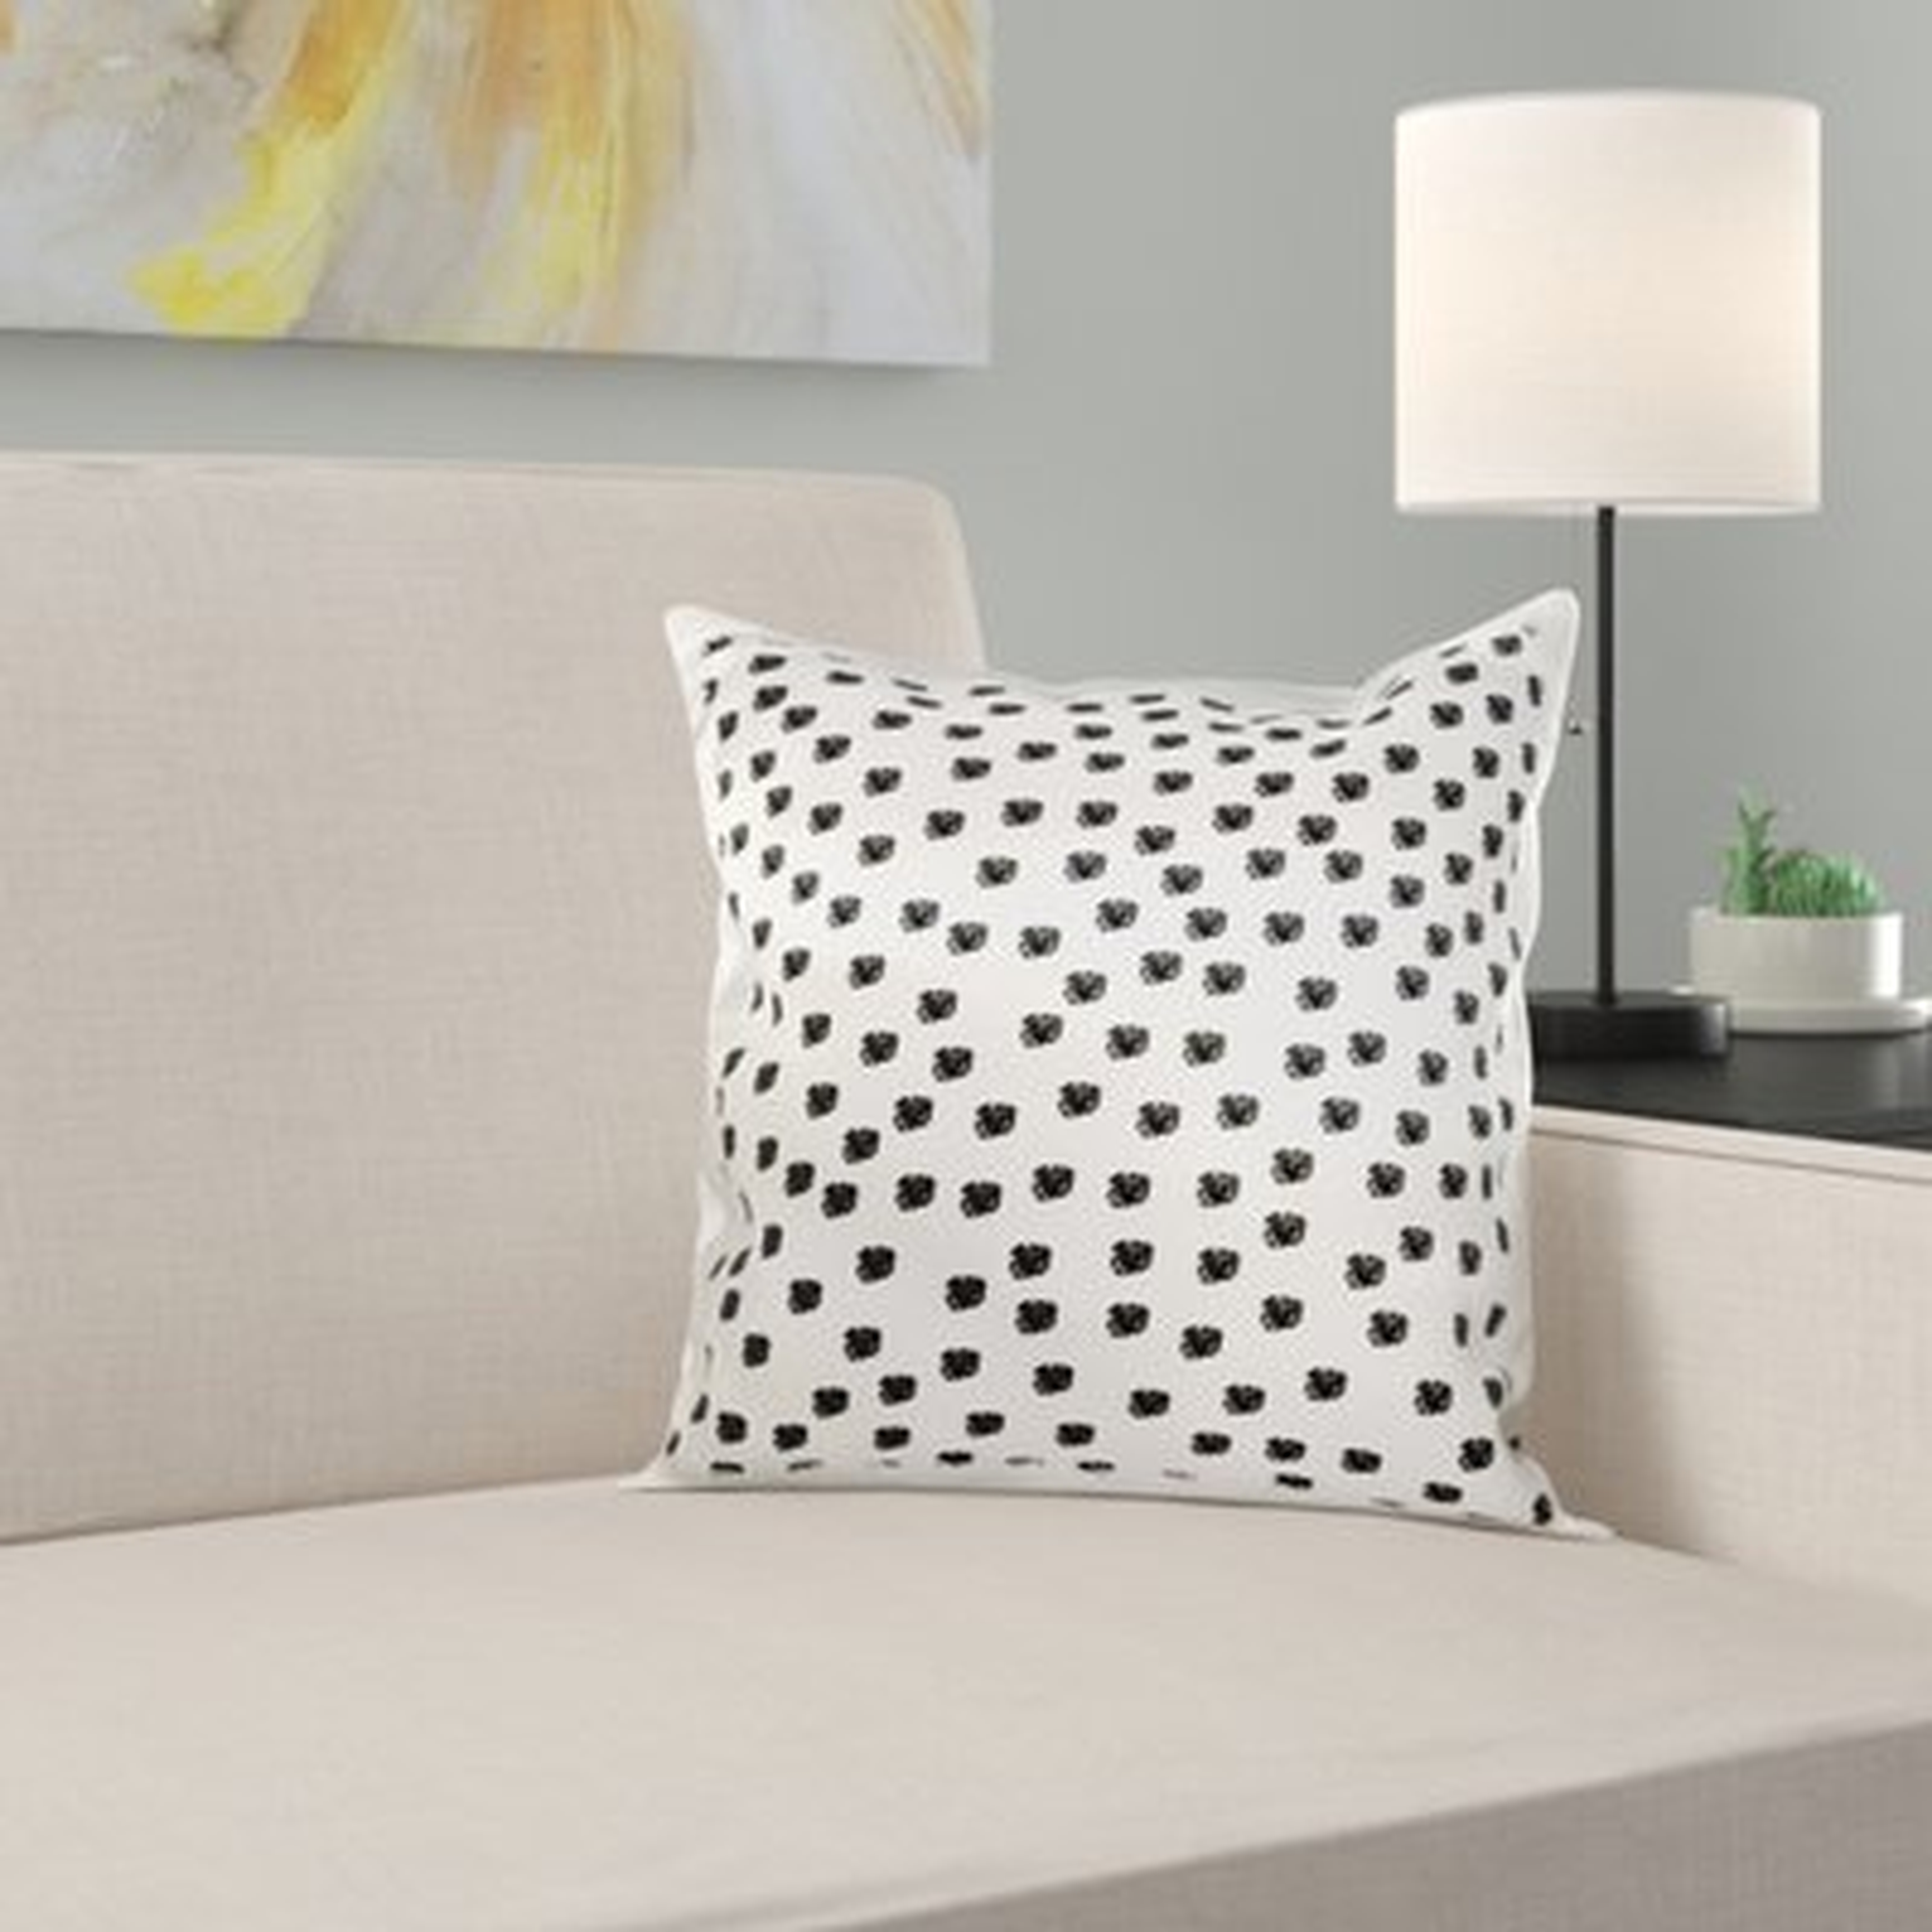 Dalmatian Spots Dogs Animal Print Pillow Cover - Wayfair